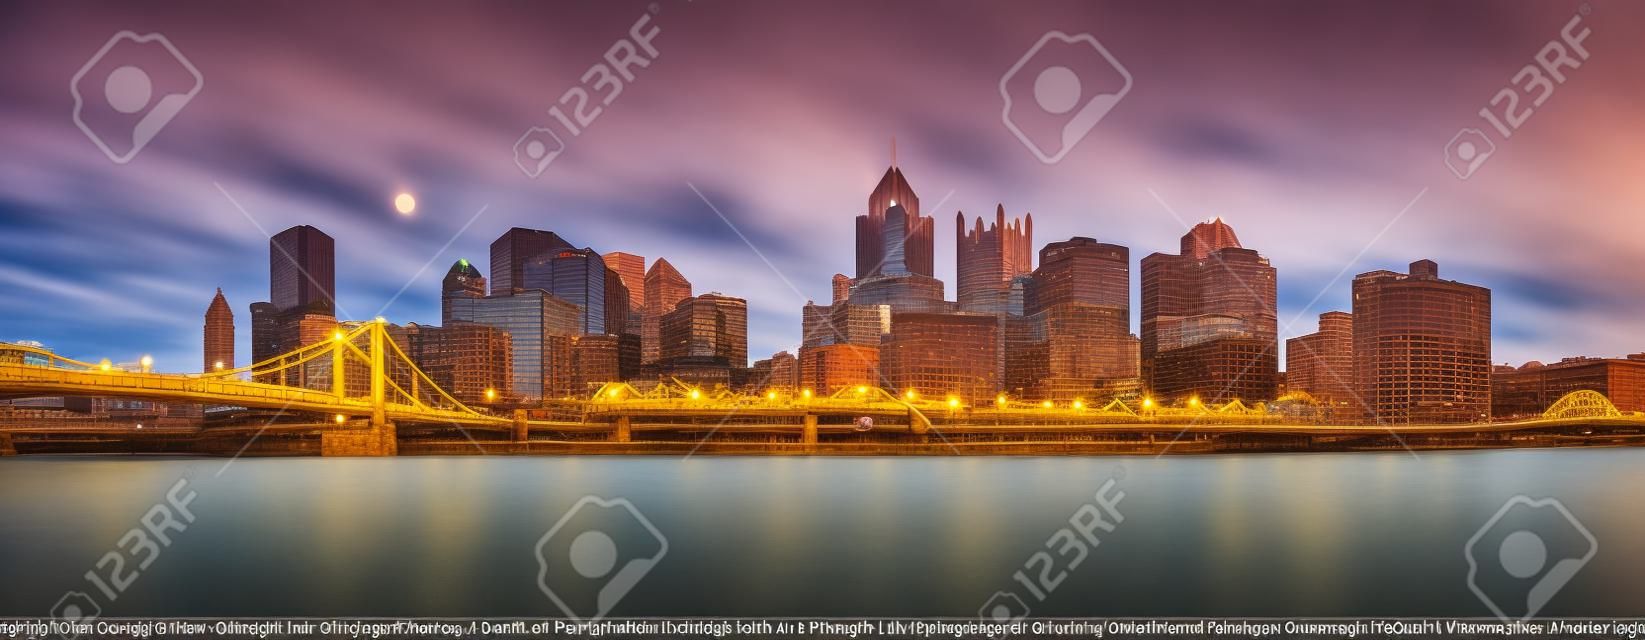 Lange blootstelling van Pittsburgh downtown skyline en Roberto Clemente brug, op een zonnige middag, zoals bekeken vanaf North Shore Riverfront Park, over Allegheny River.